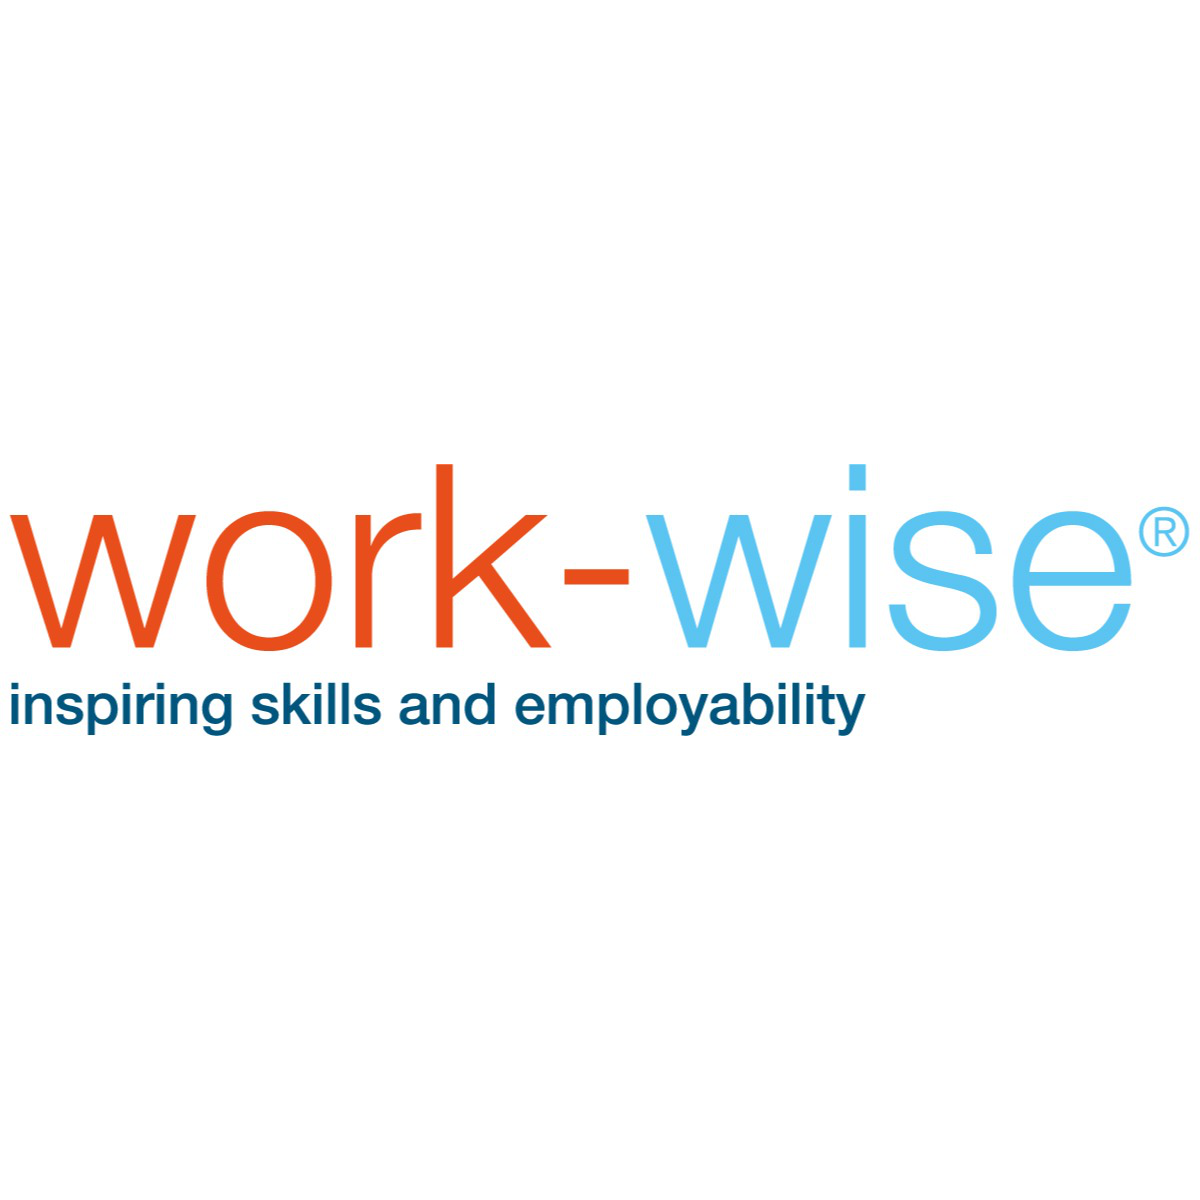 Work-Wise Engineering Employer Skills Academy